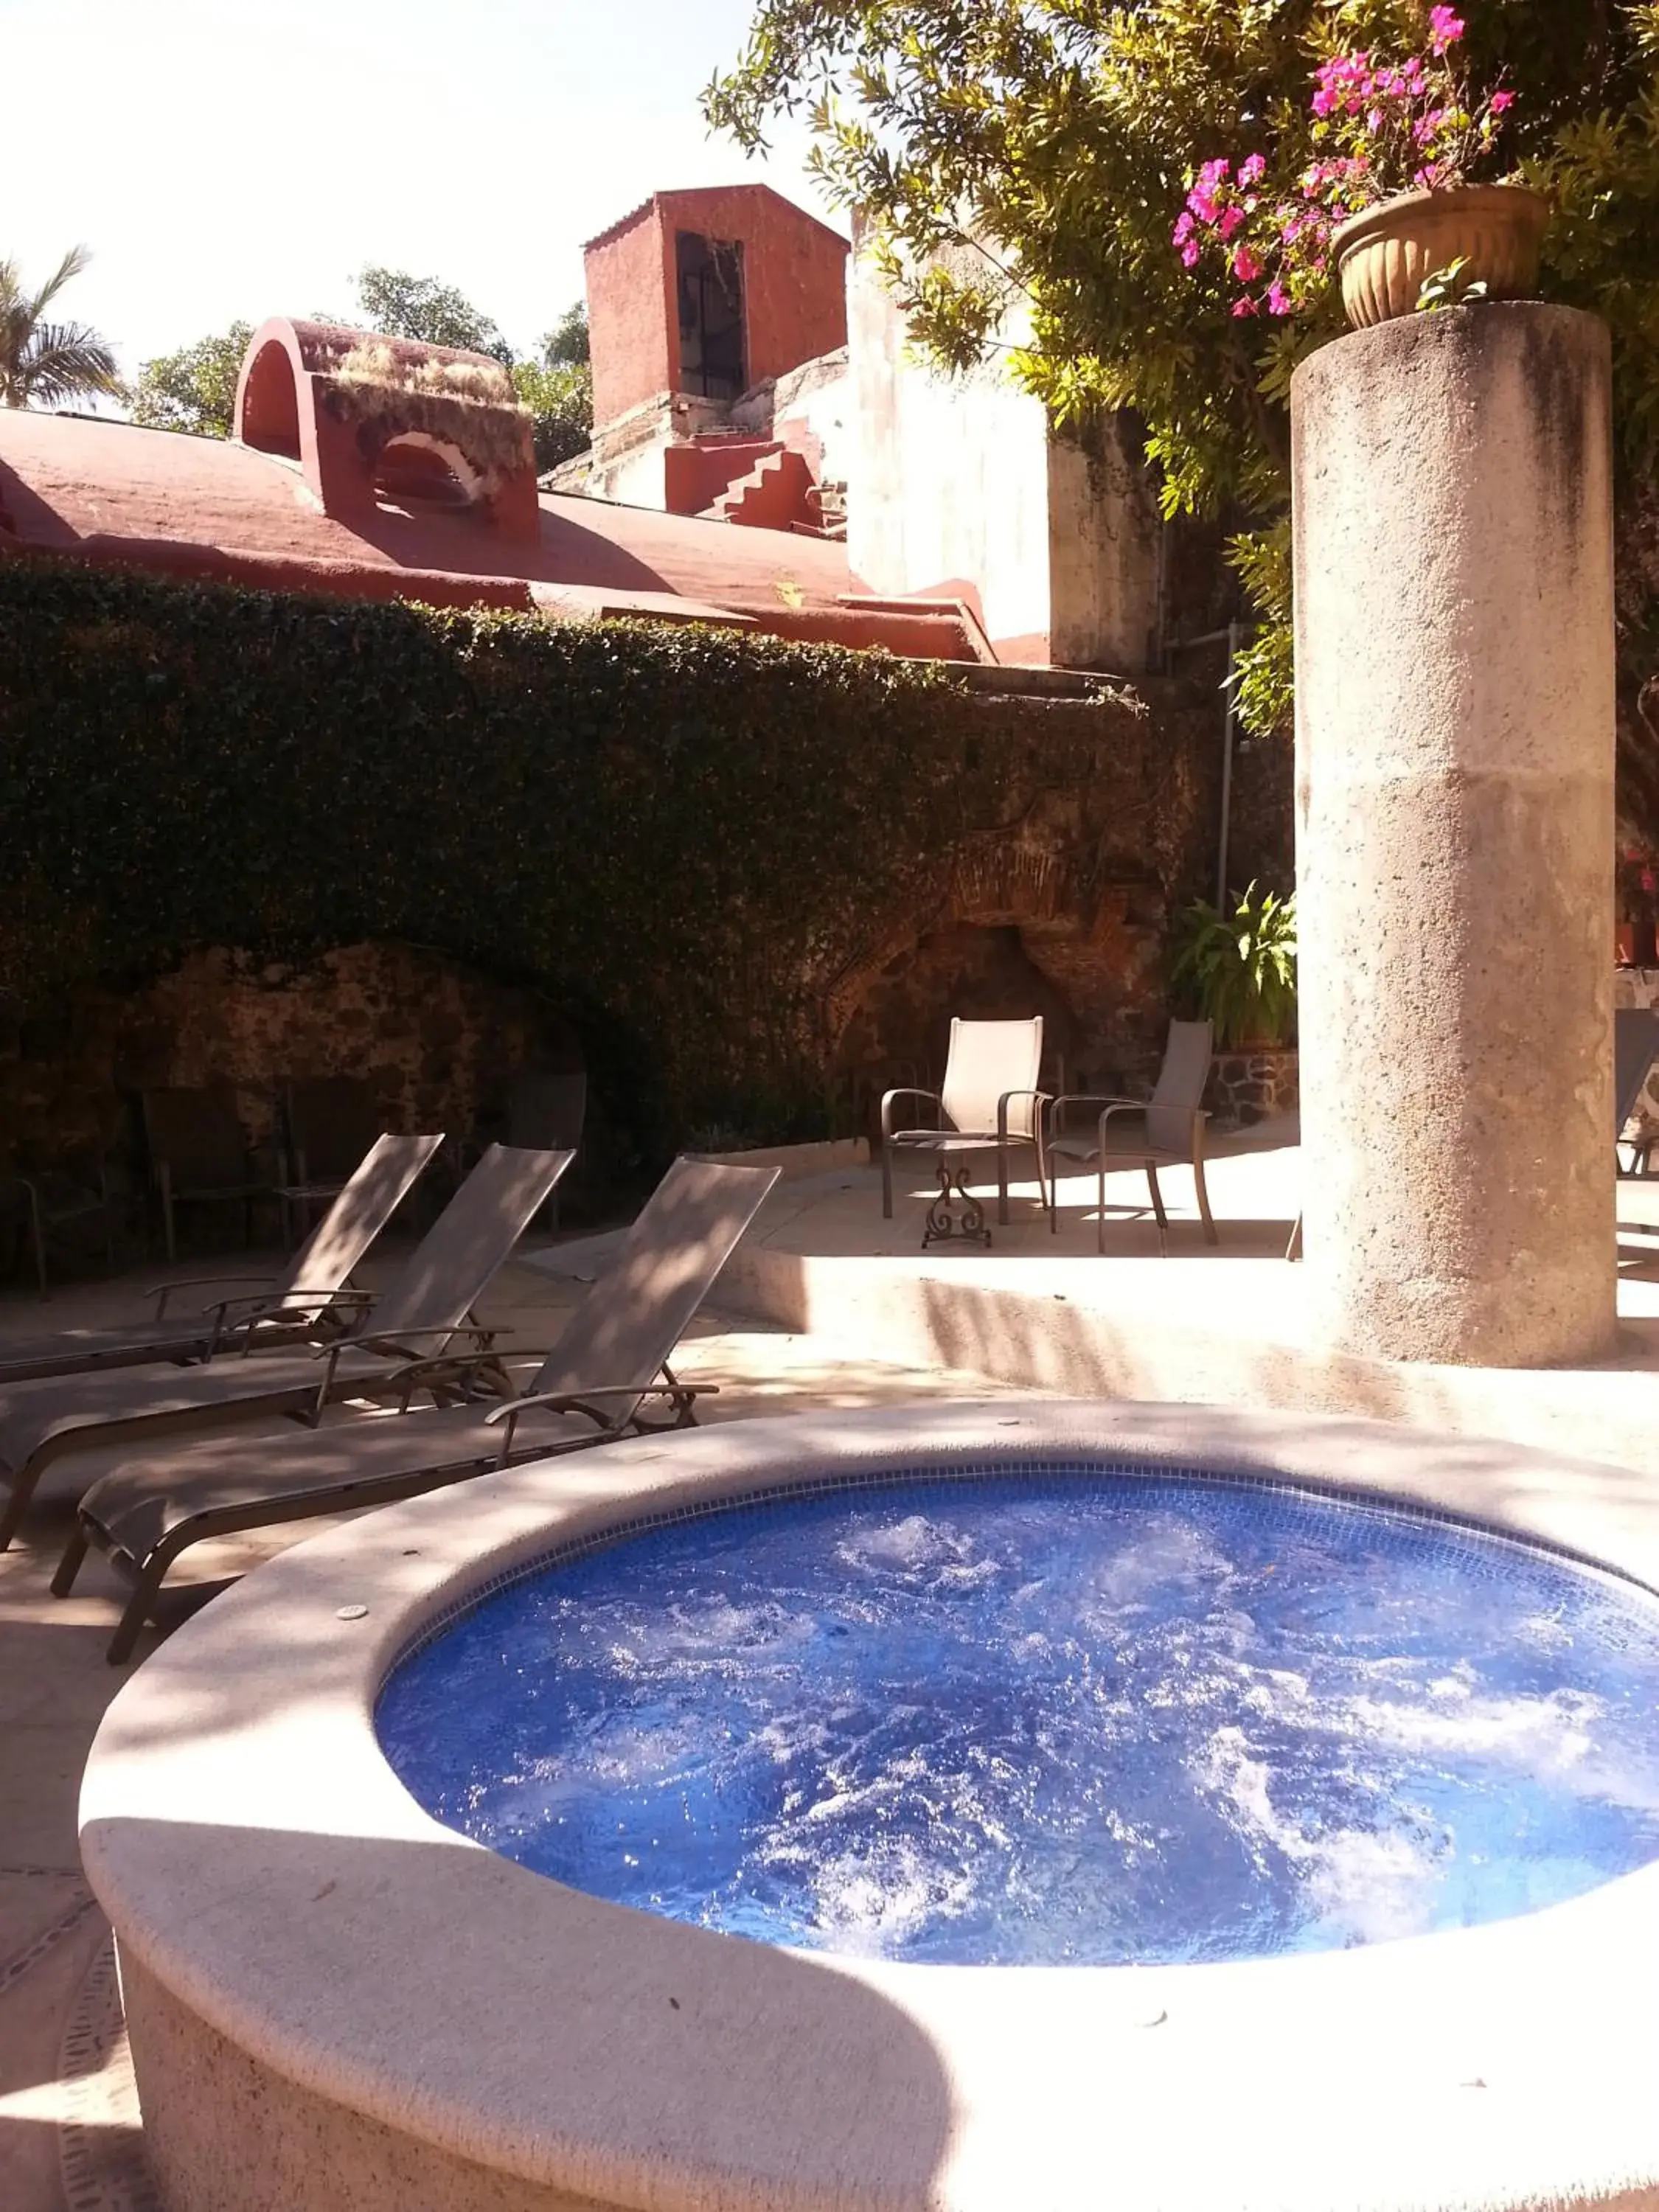 Swimming Pool in Hotel & Spa Hacienda de Cort